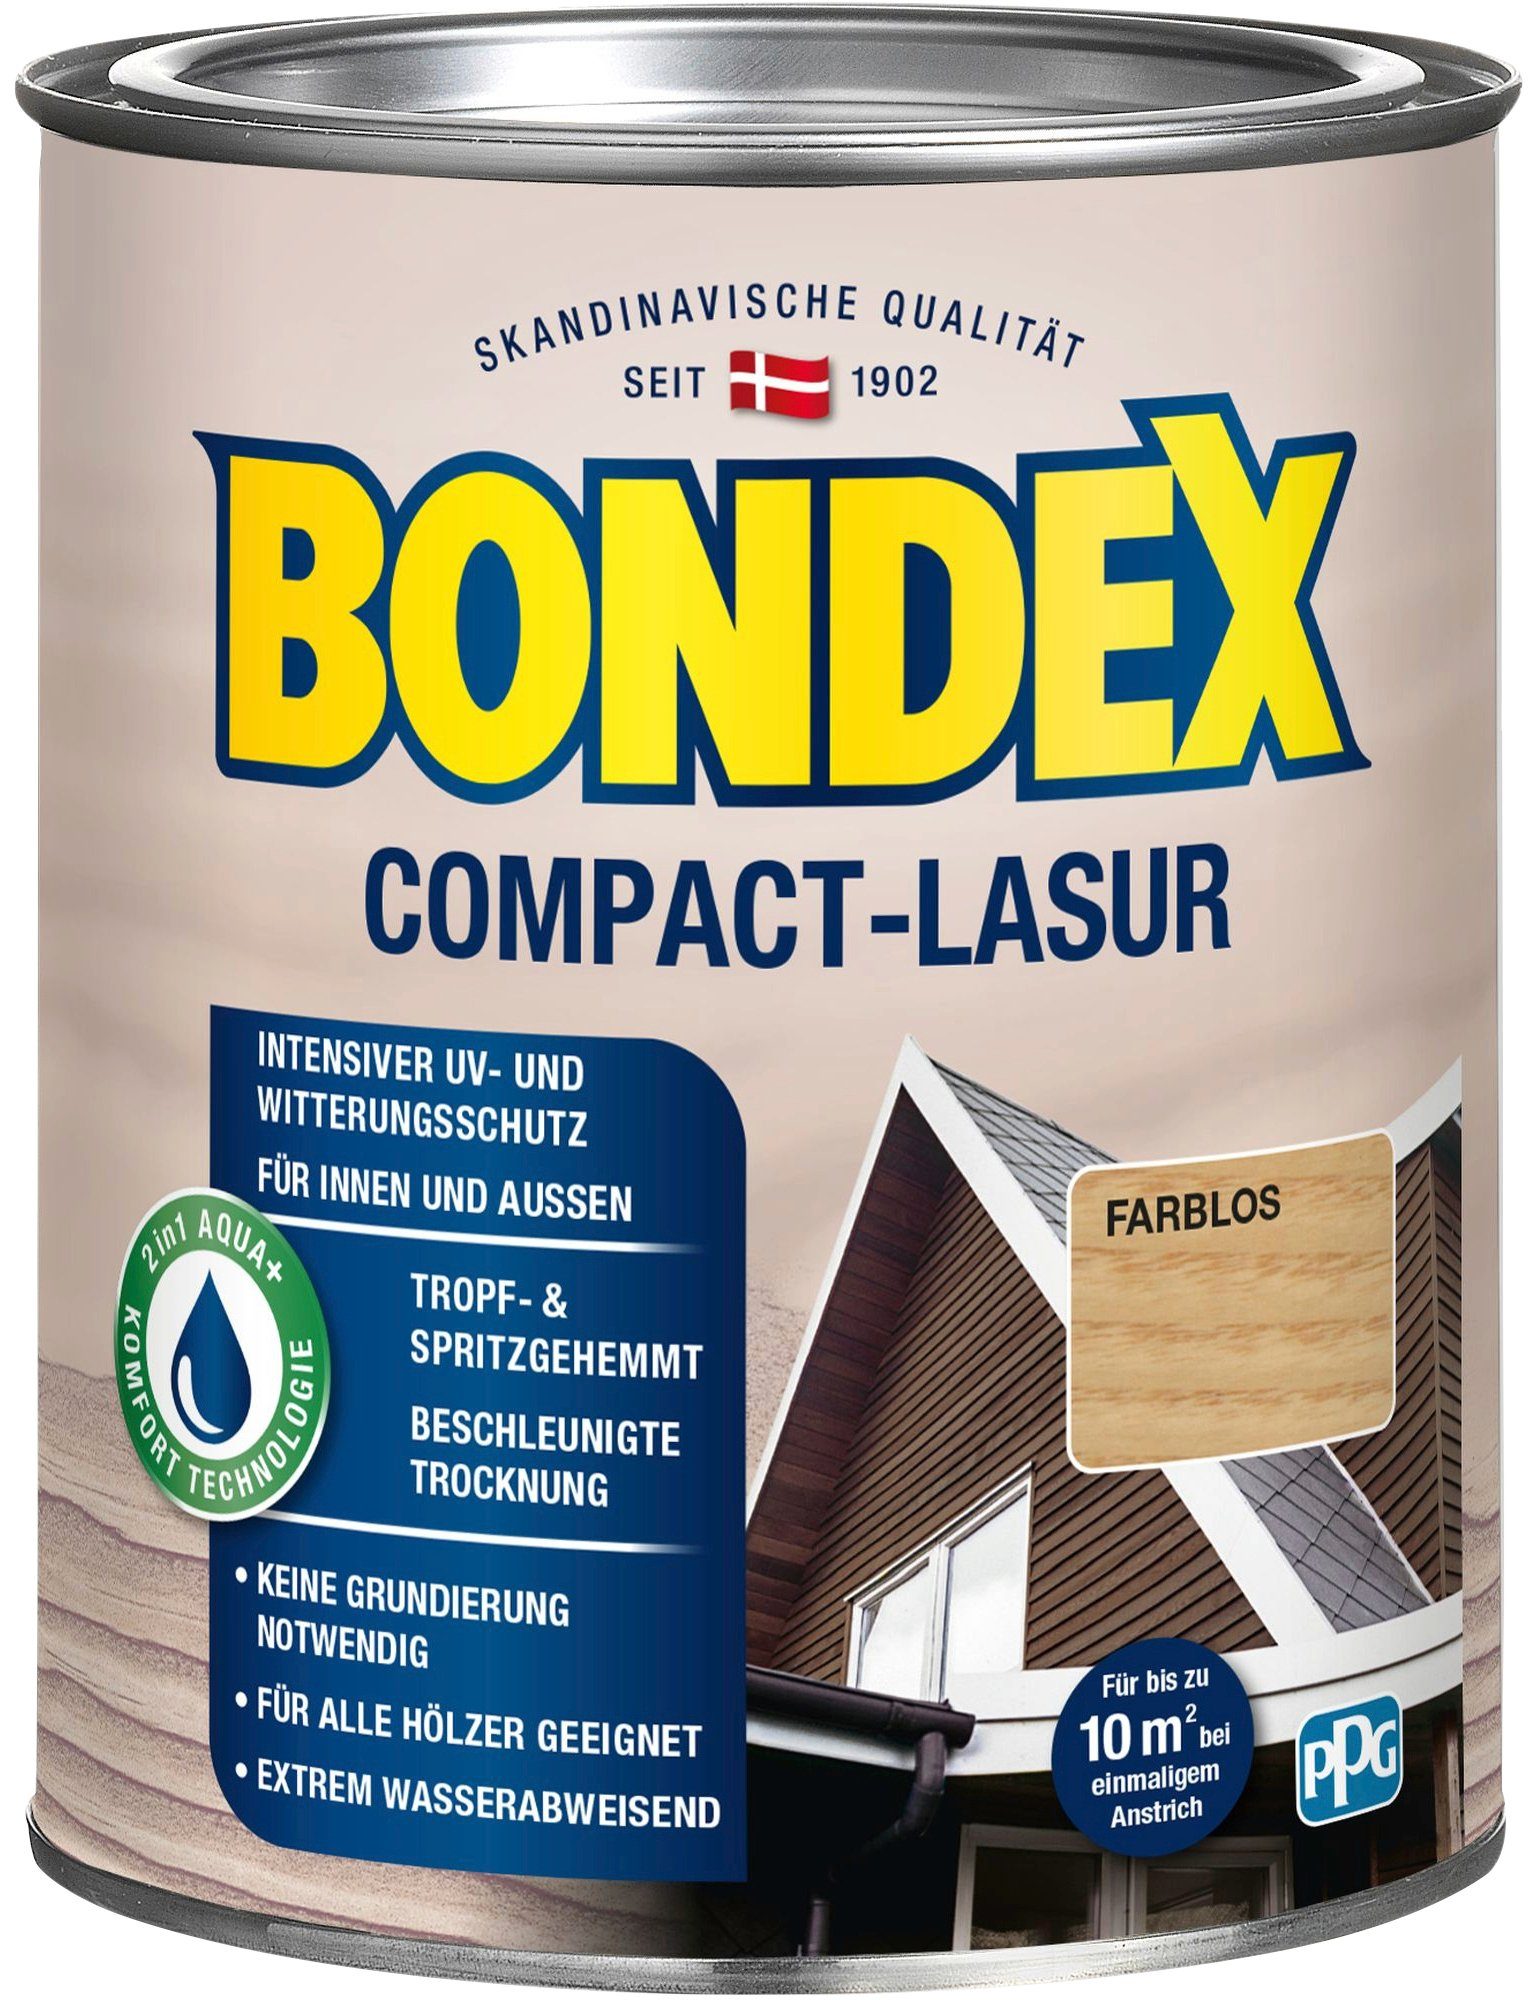 Bondex Holzschutzlasur COMPACT-LASUR, intensiver UV- & wasserabweisend Witterungsschutz, Farblos extrem